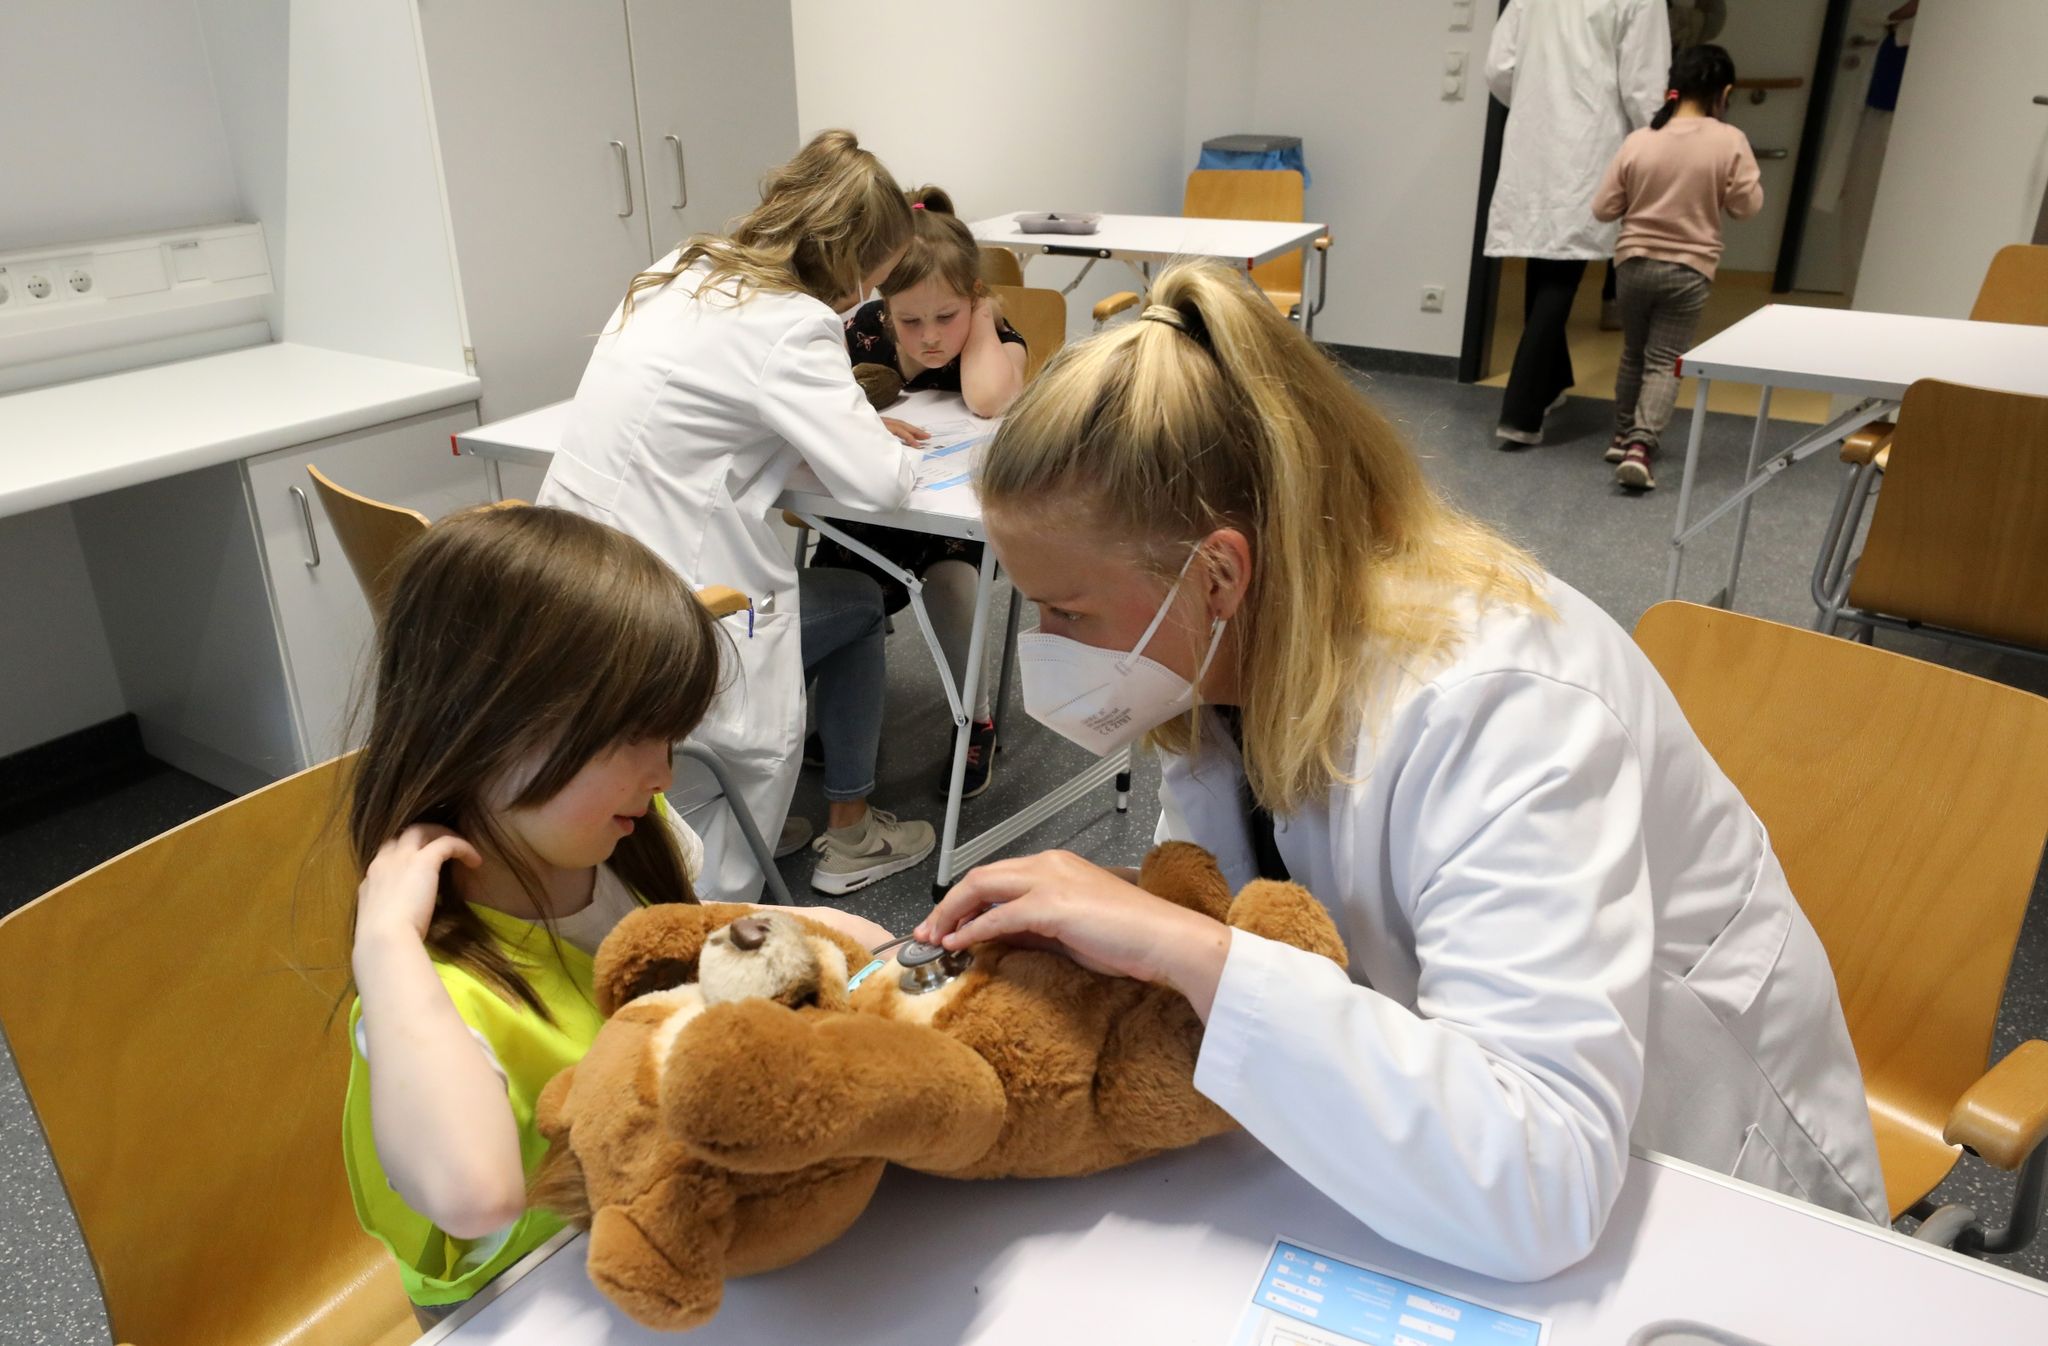 Nach der Wiedereröffnung des Teddybärkrankenhauses an der Universitätsmedizin empfängt Anna Rautmann, Medizinstudentin, den Teddy einer kleinen Besucherin.